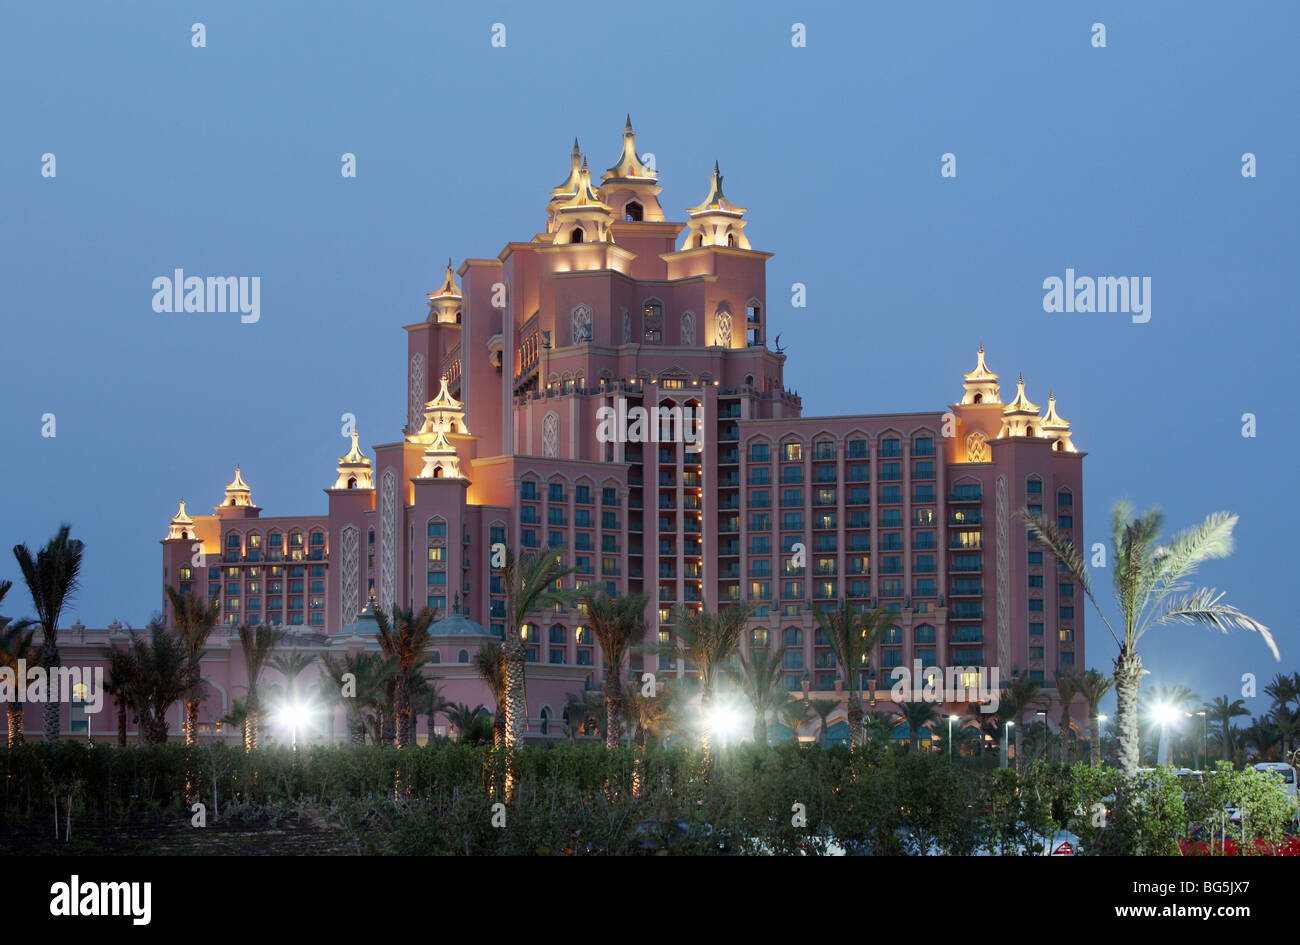 Hotel Atlantis in the evening, Dubai, United Arab Emirates Stock Photo